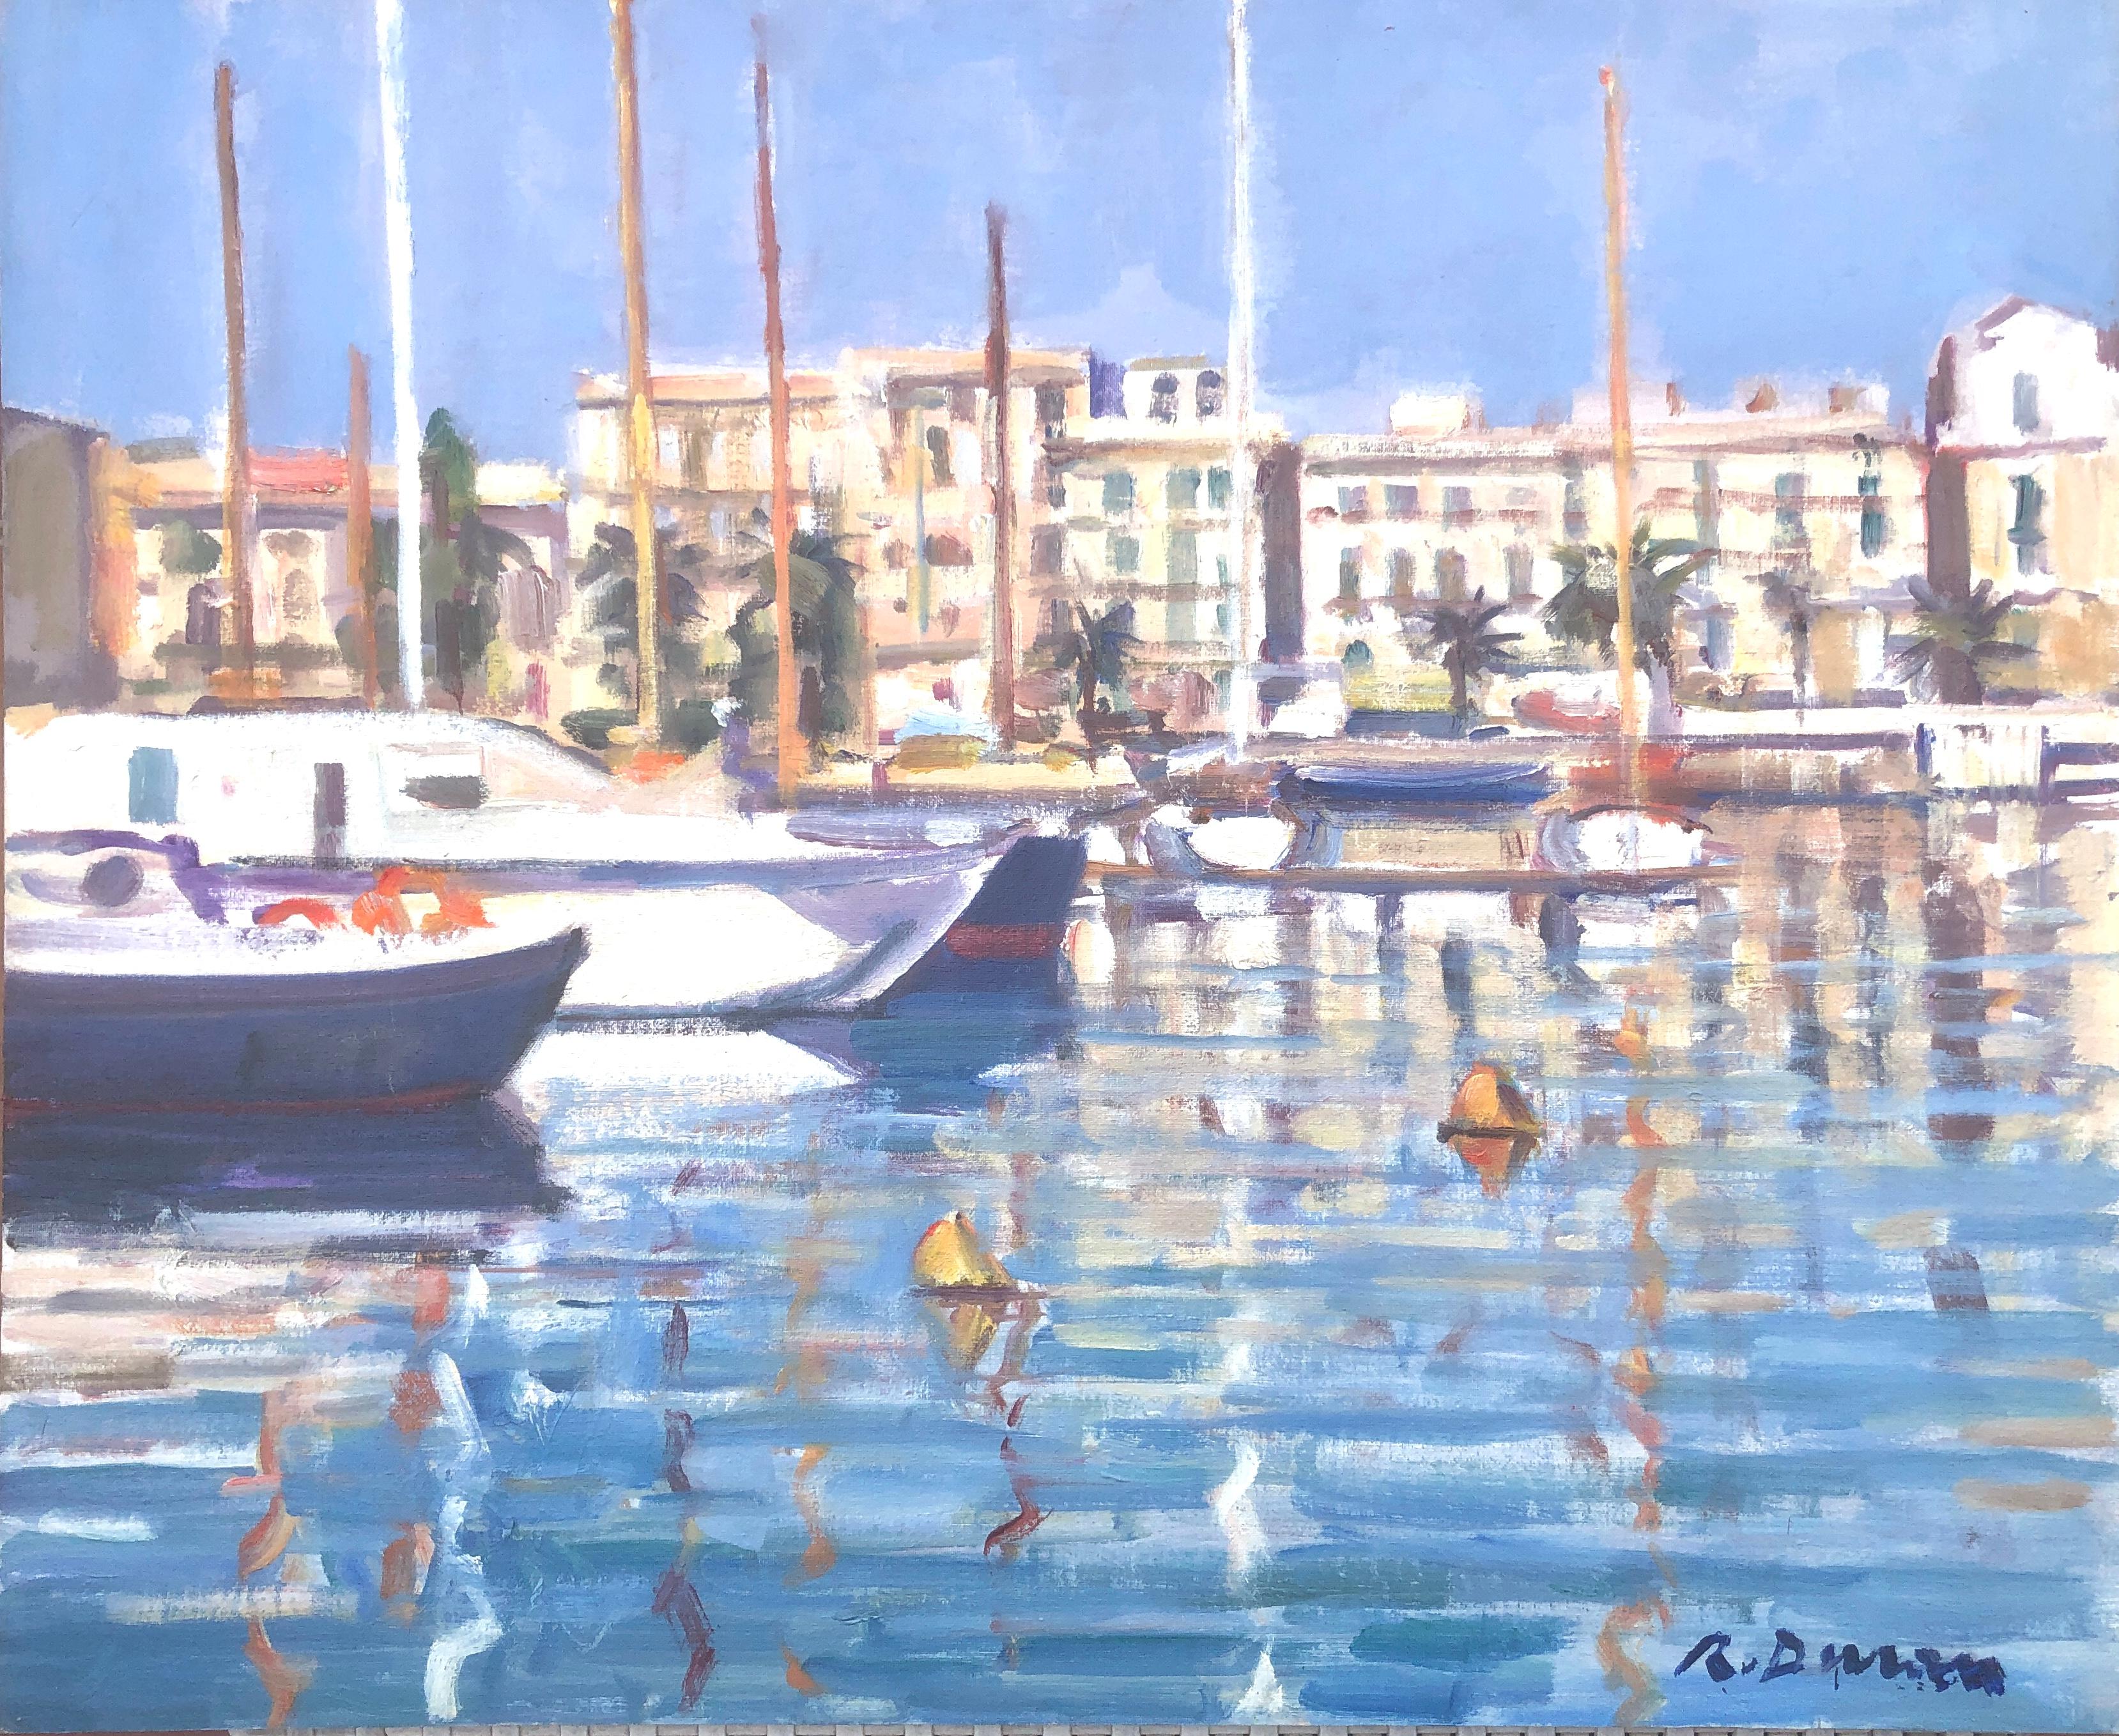 Landscape Painting Rafael Duran Benet - Andraitx Mallorca Espagne peinture à l'huile paysage marin méditerranéen espagnol